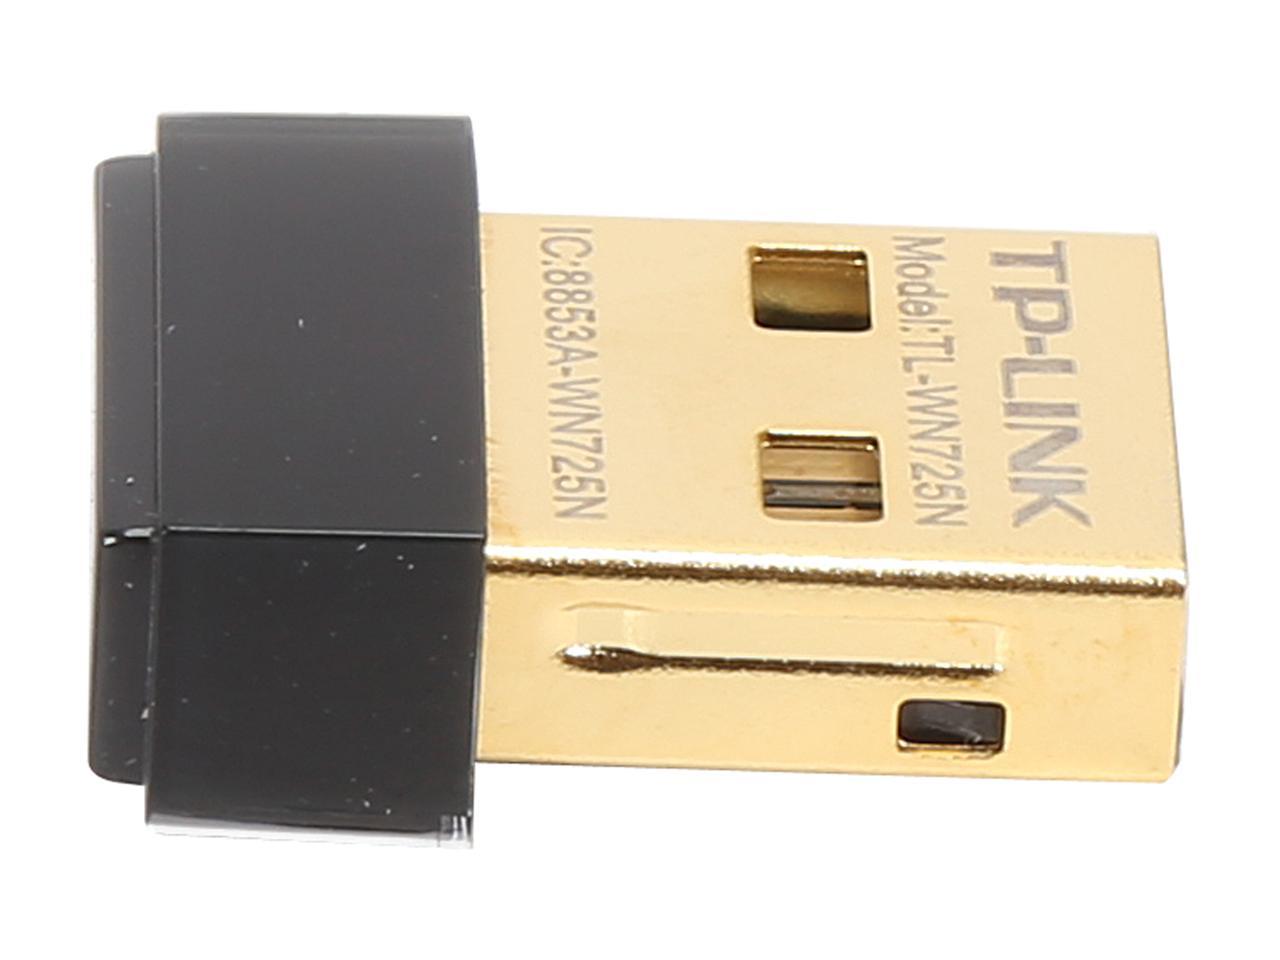 TP-LINK TL-WN725N Nano Wireless N150 Adapter, 150Mbps, IEEE 802.11b/g/n, WEP, WPA / WPA2, Plug & Play in Windows 10 (32 bit & 64 bit) - image 3 of 5